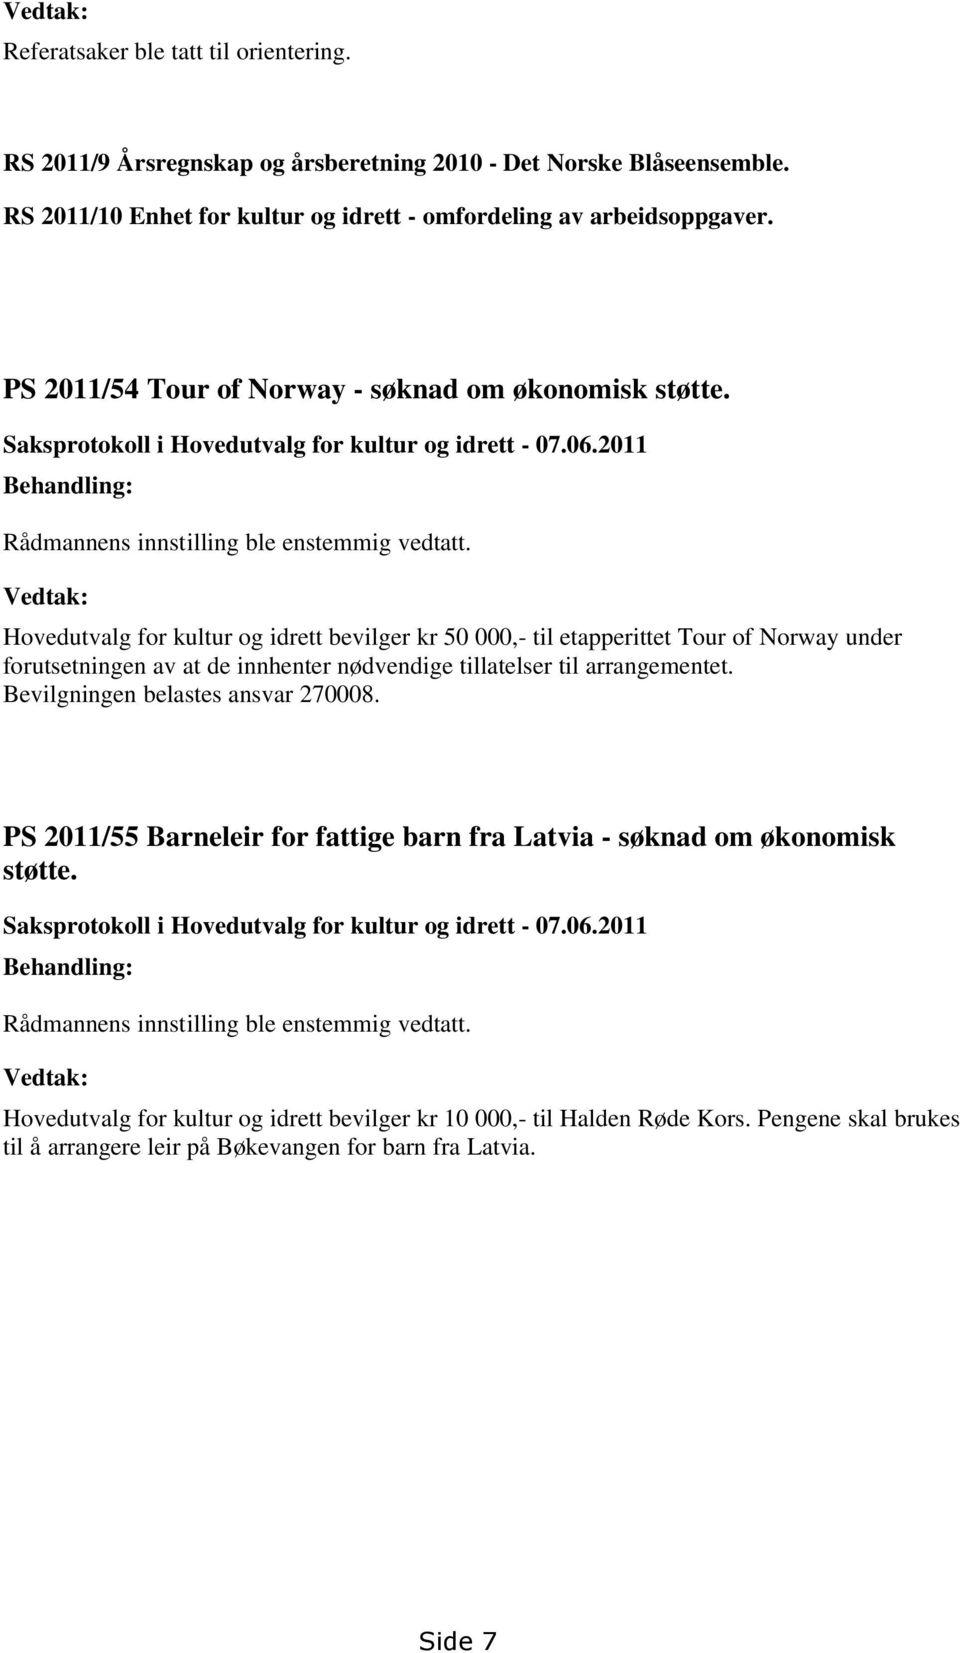 Vedtak: Hovedutvalg for kultur og idrett bevilger kr 50 000,- til etapperittet Tour of Norway under forutsetningen av at de innhenter nødvendige tillatelser til arrangementet.